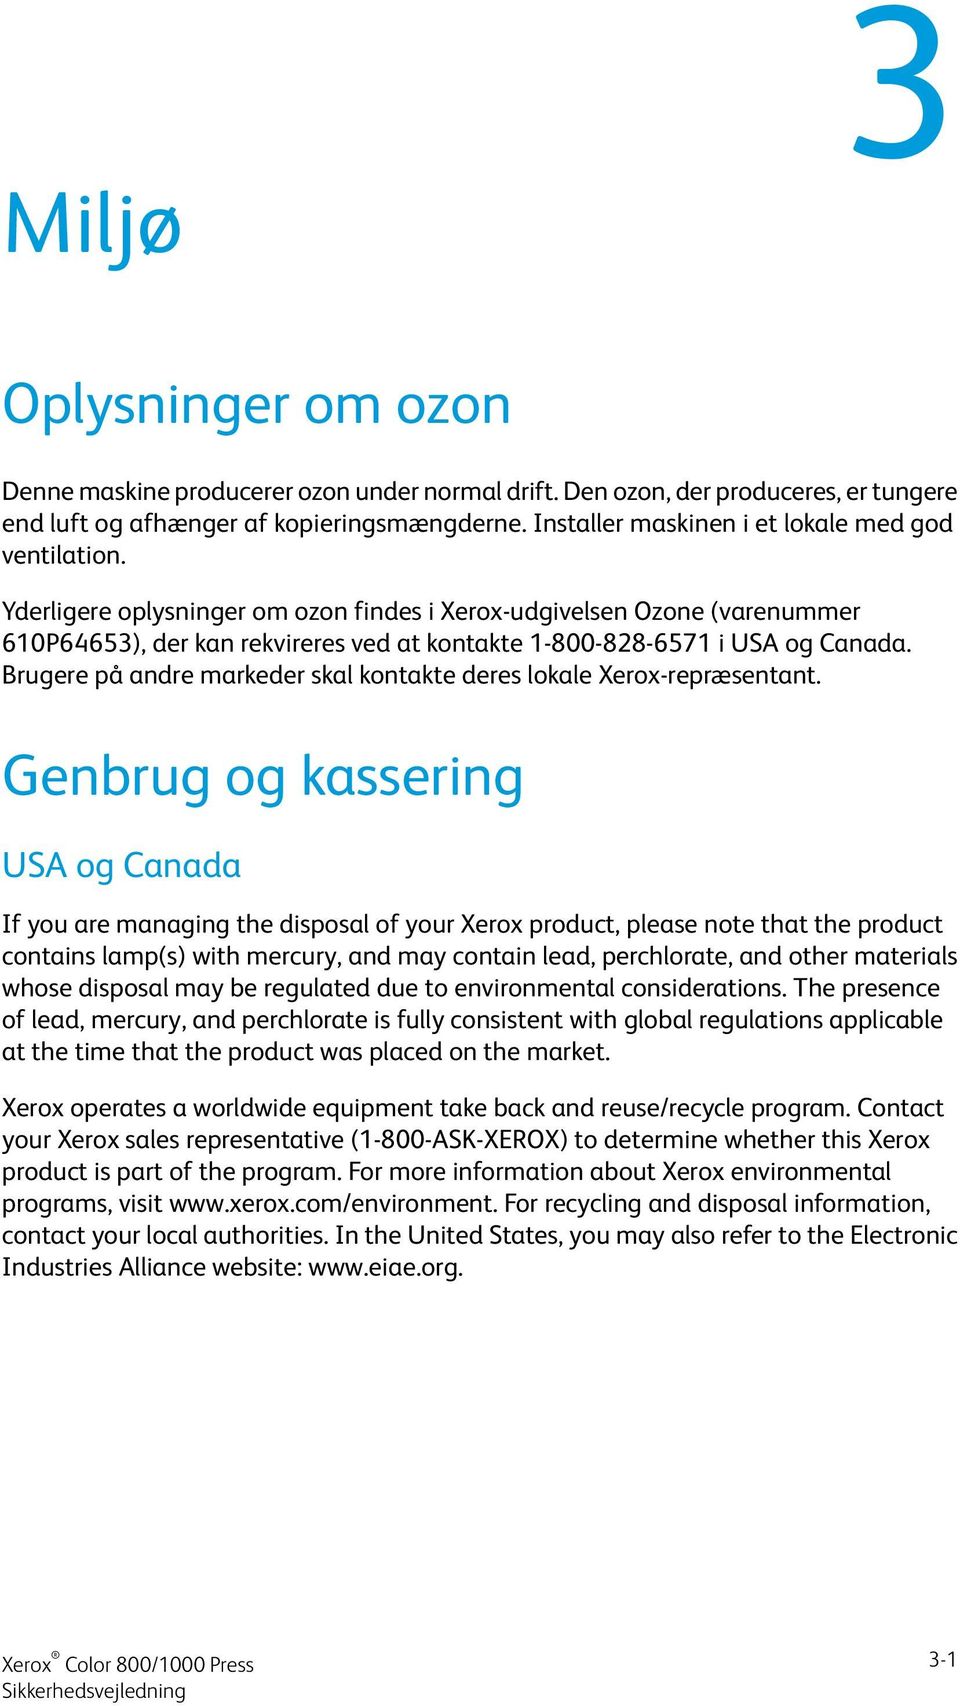 Yderligere oplysninger om ozon findes i Xerox-udgivelsen Ozone (varenummer 610P64653), der kan rekvireres ved at kontakte 1-800-828-6571 i USA og Canada.